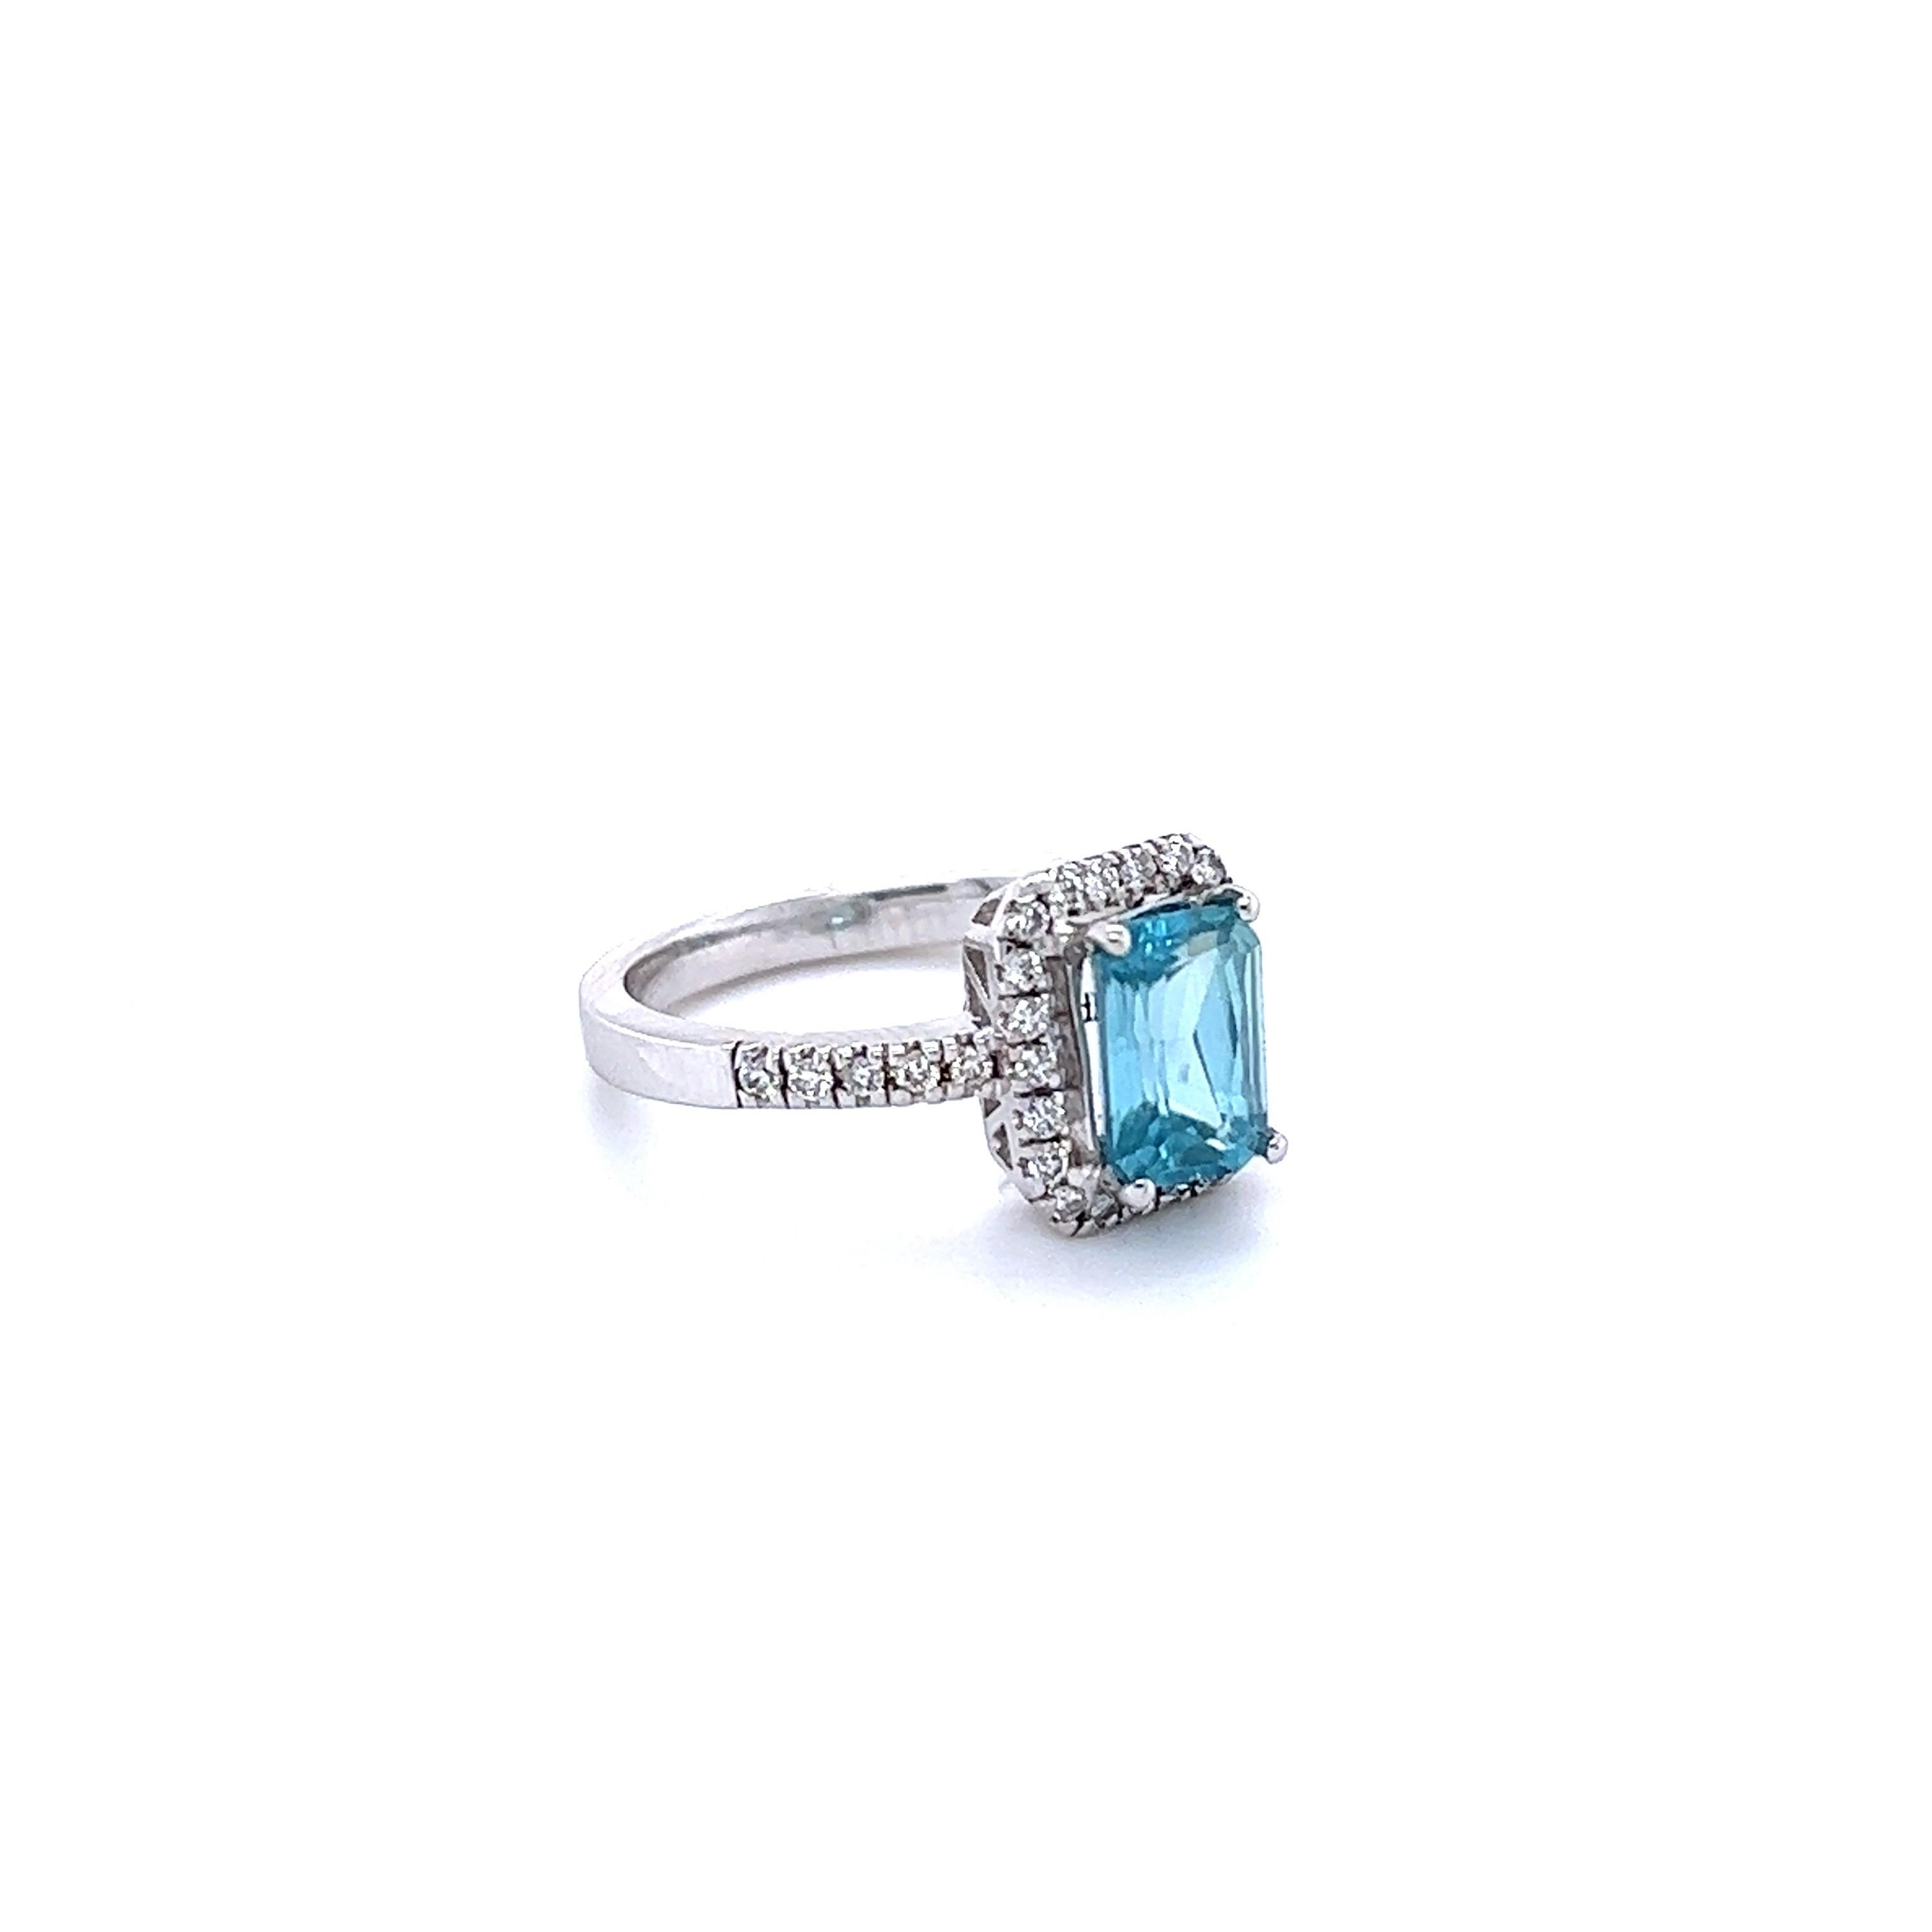 Blauer Zirkon ist ein Naturstein, der hauptsächlich in Sri Lanka, Myanmar und Australien abgebaut wird.  
Dieser Ring hat einen blauen Zirkon im Smaragdschliff, der 2,41 Karat wiegt und von 32 Diamanten im Rundschliff umgeben ist, die 0,32 Karat